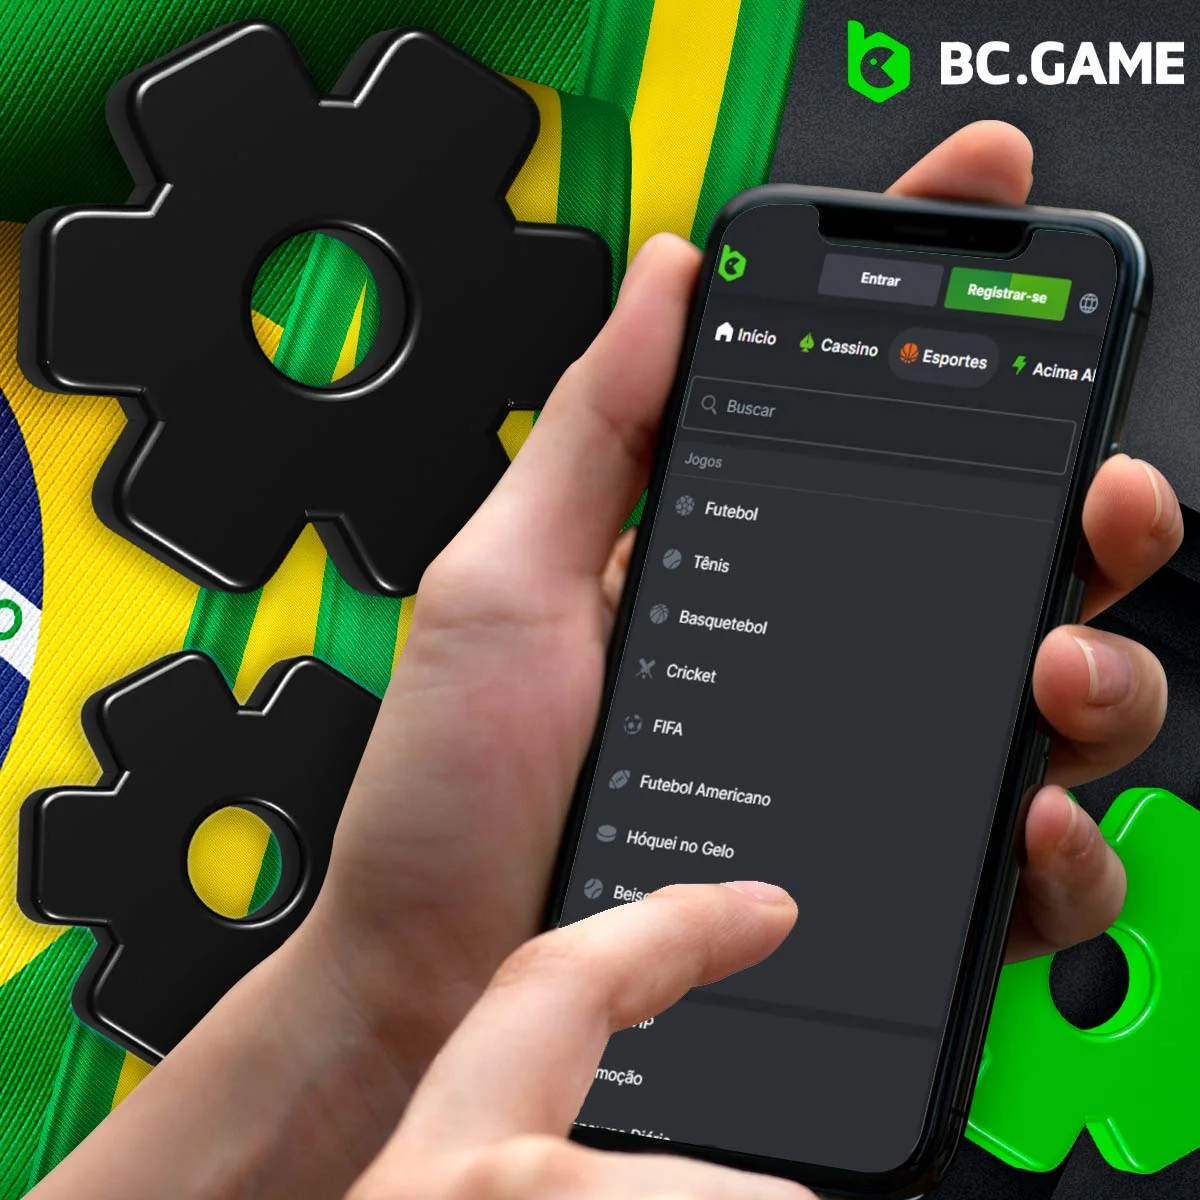 Que características e funcionalidades oferece a BC Game para a aplicação móvel?